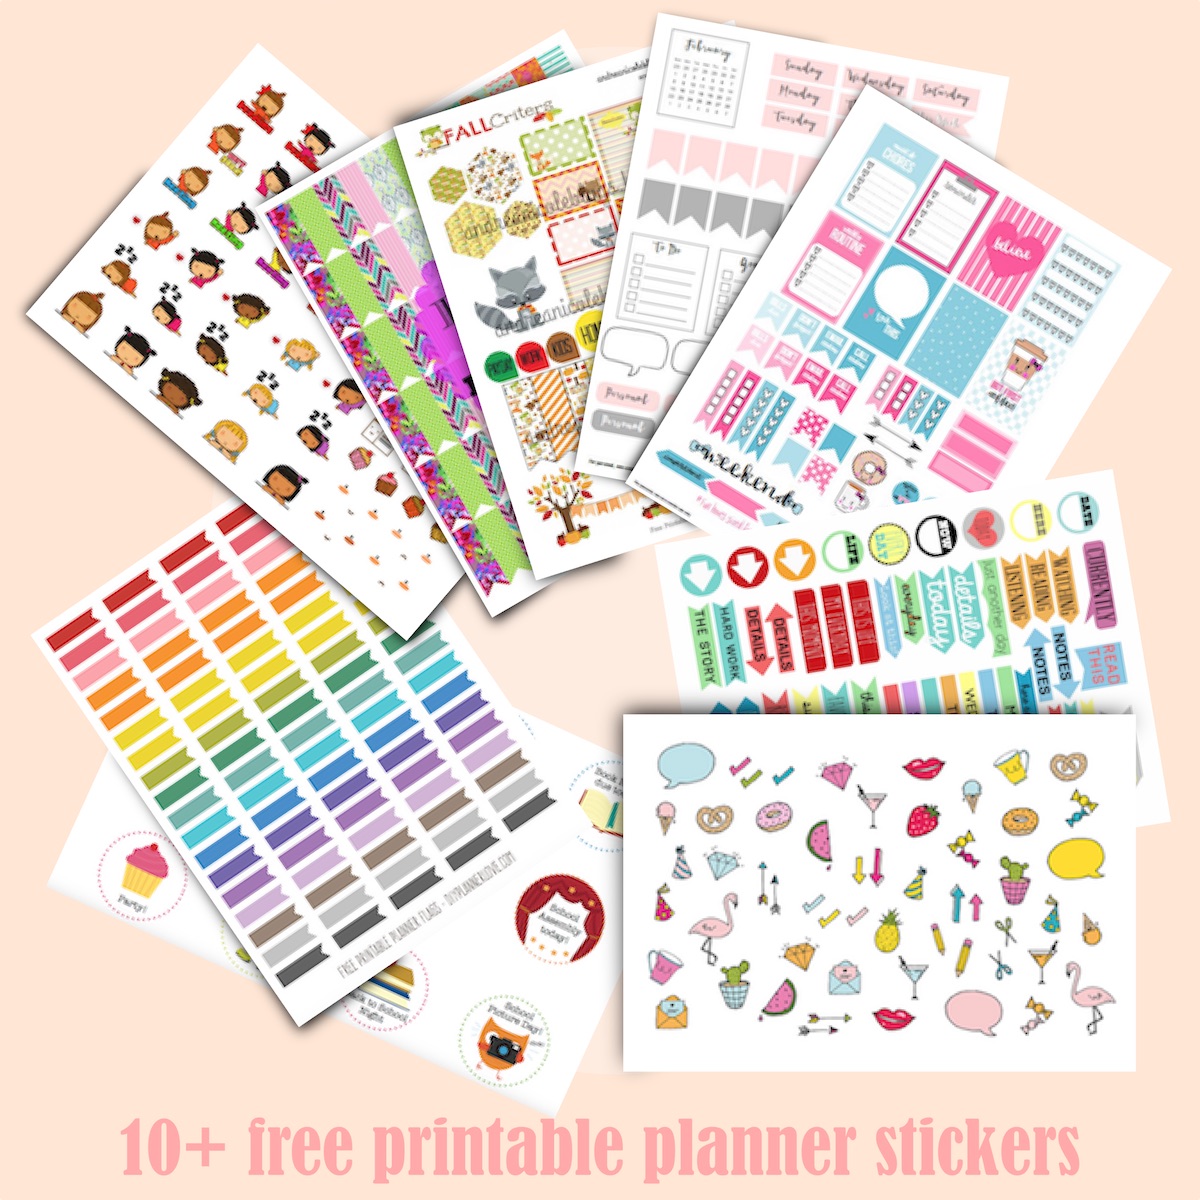 10-free-printable-planner-stickers-ausdruckbare-agendasticker